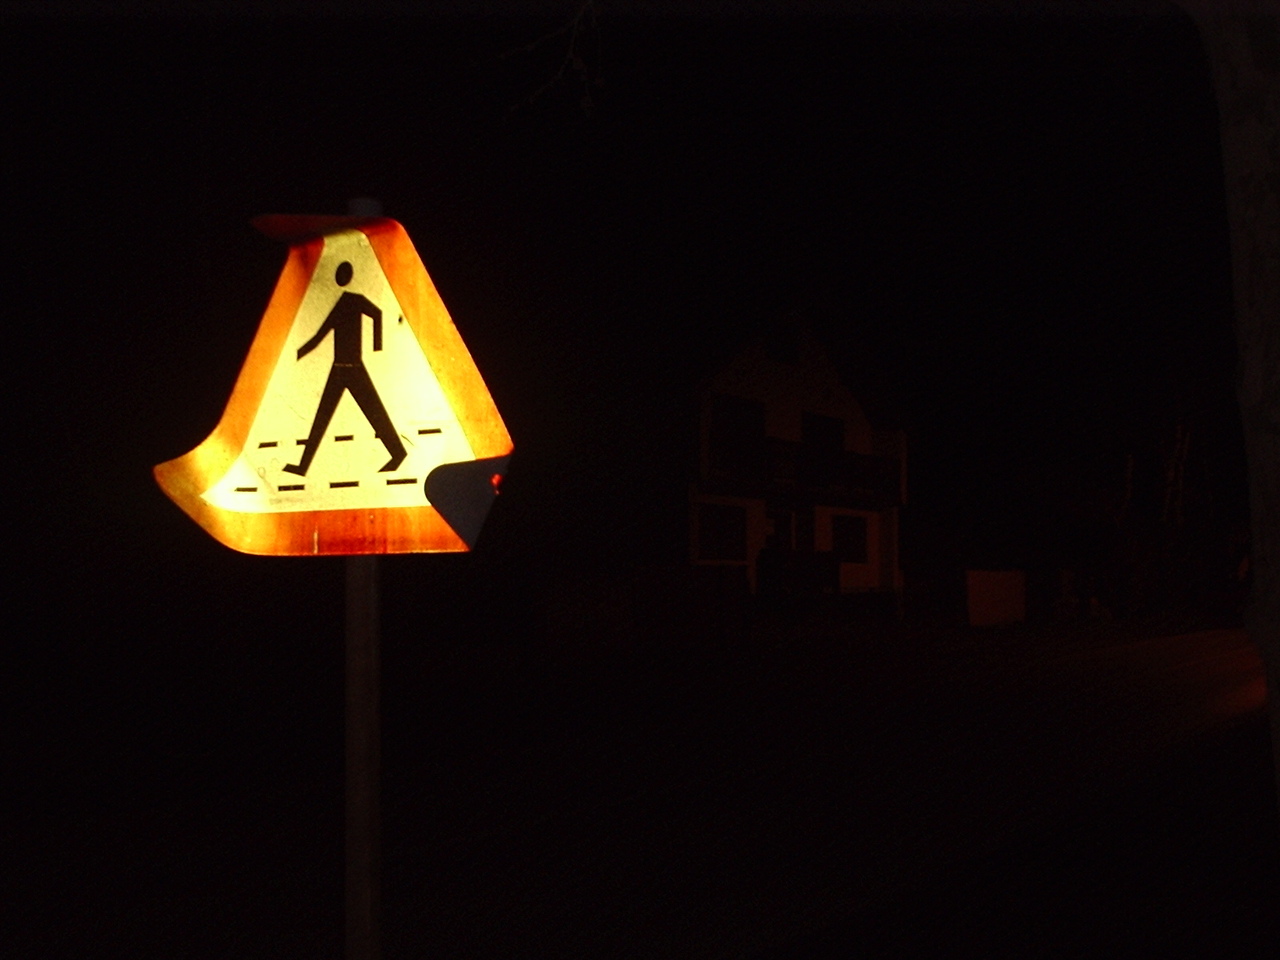 여자가 혼자 밤길을 걷는 것조차 두려워 해야 한다면 그 사회가 건강하지 못한 것 아닐까.